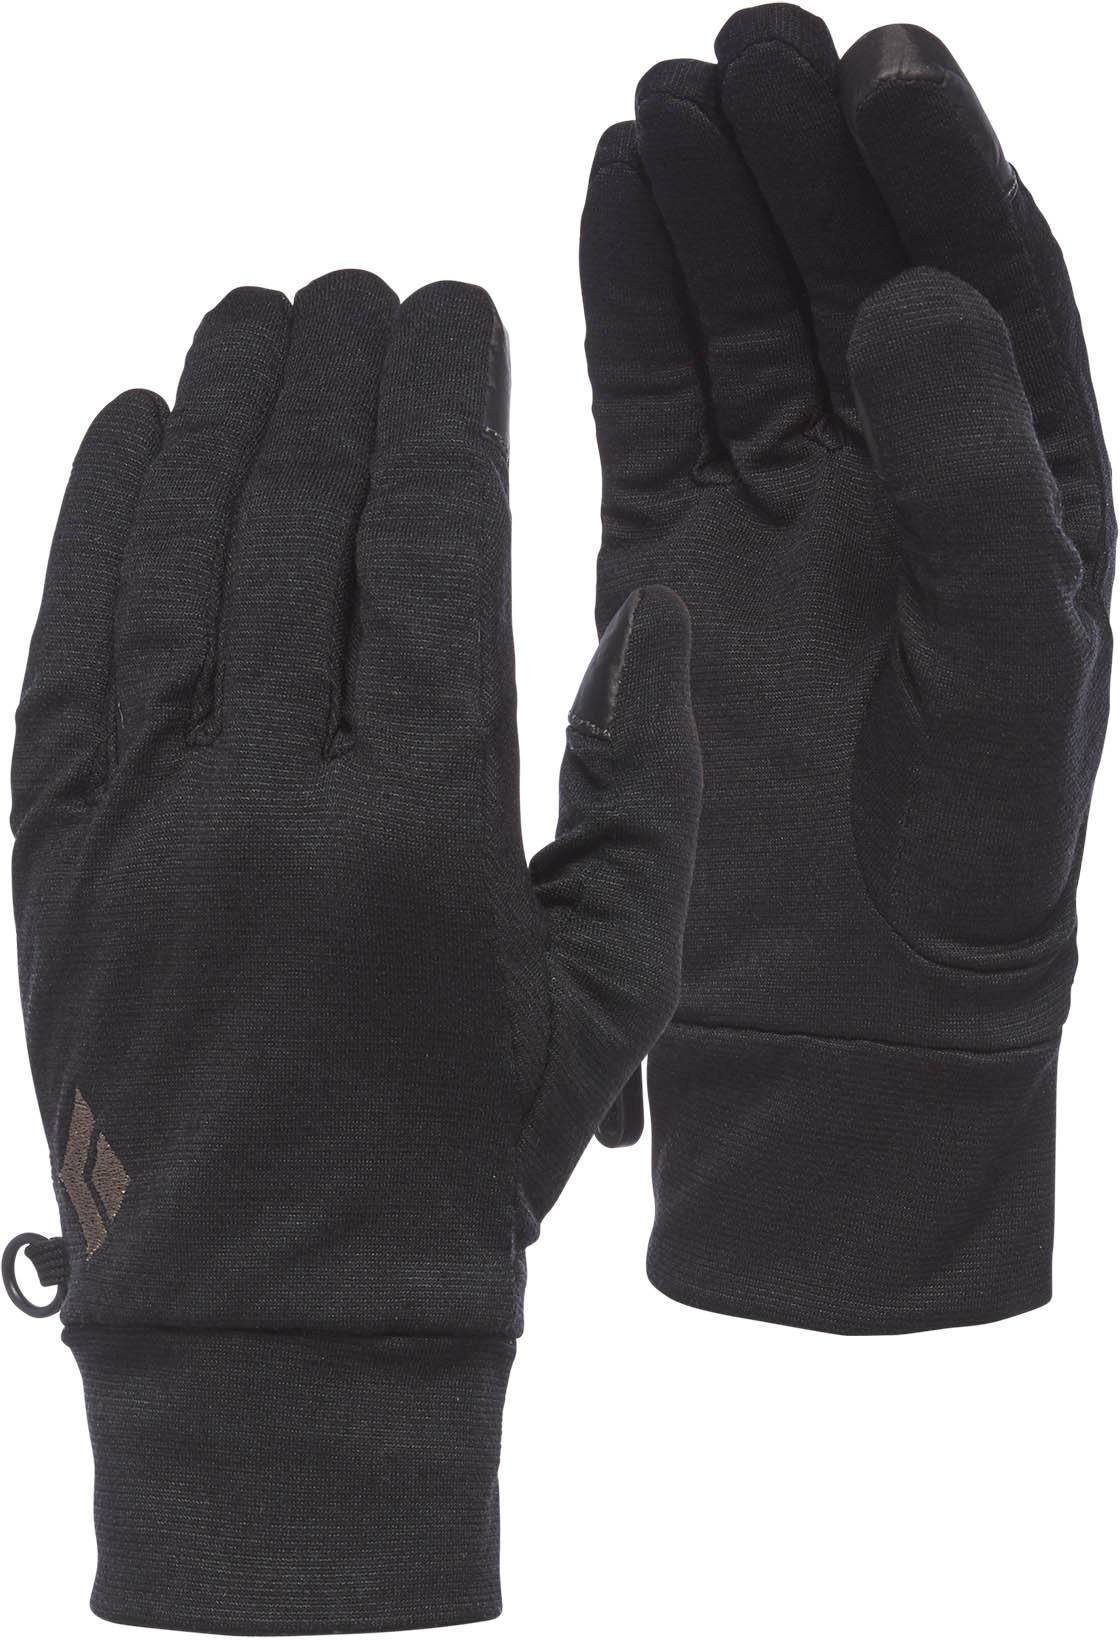 Black Diamond LightWeight WoolTech Glove